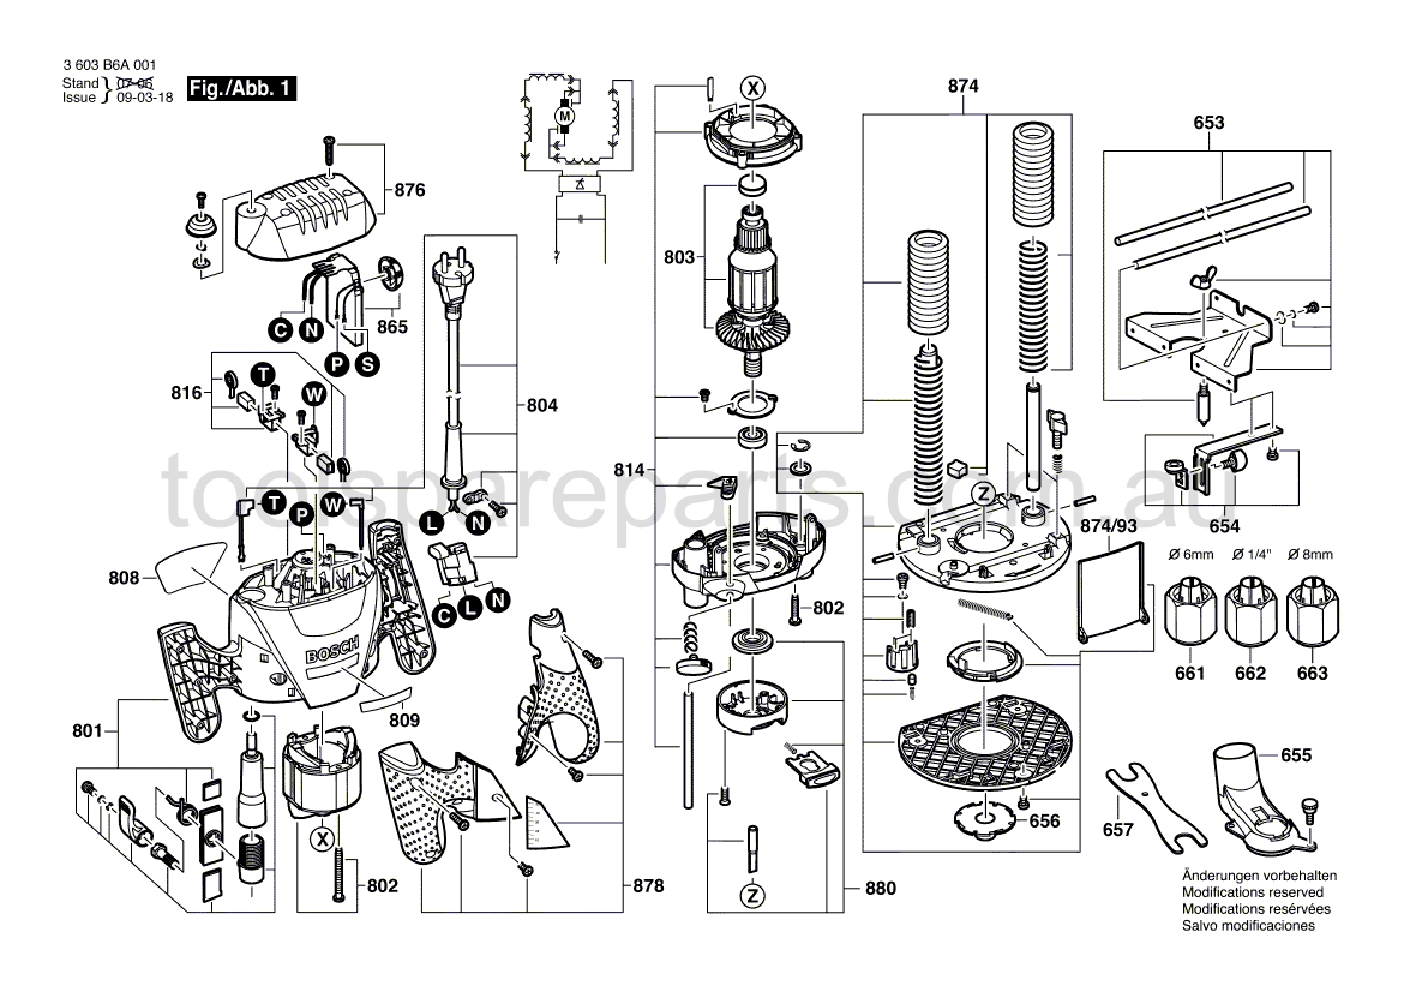 Bosch POF 1200 AE 3603B6A041  Diagram 1